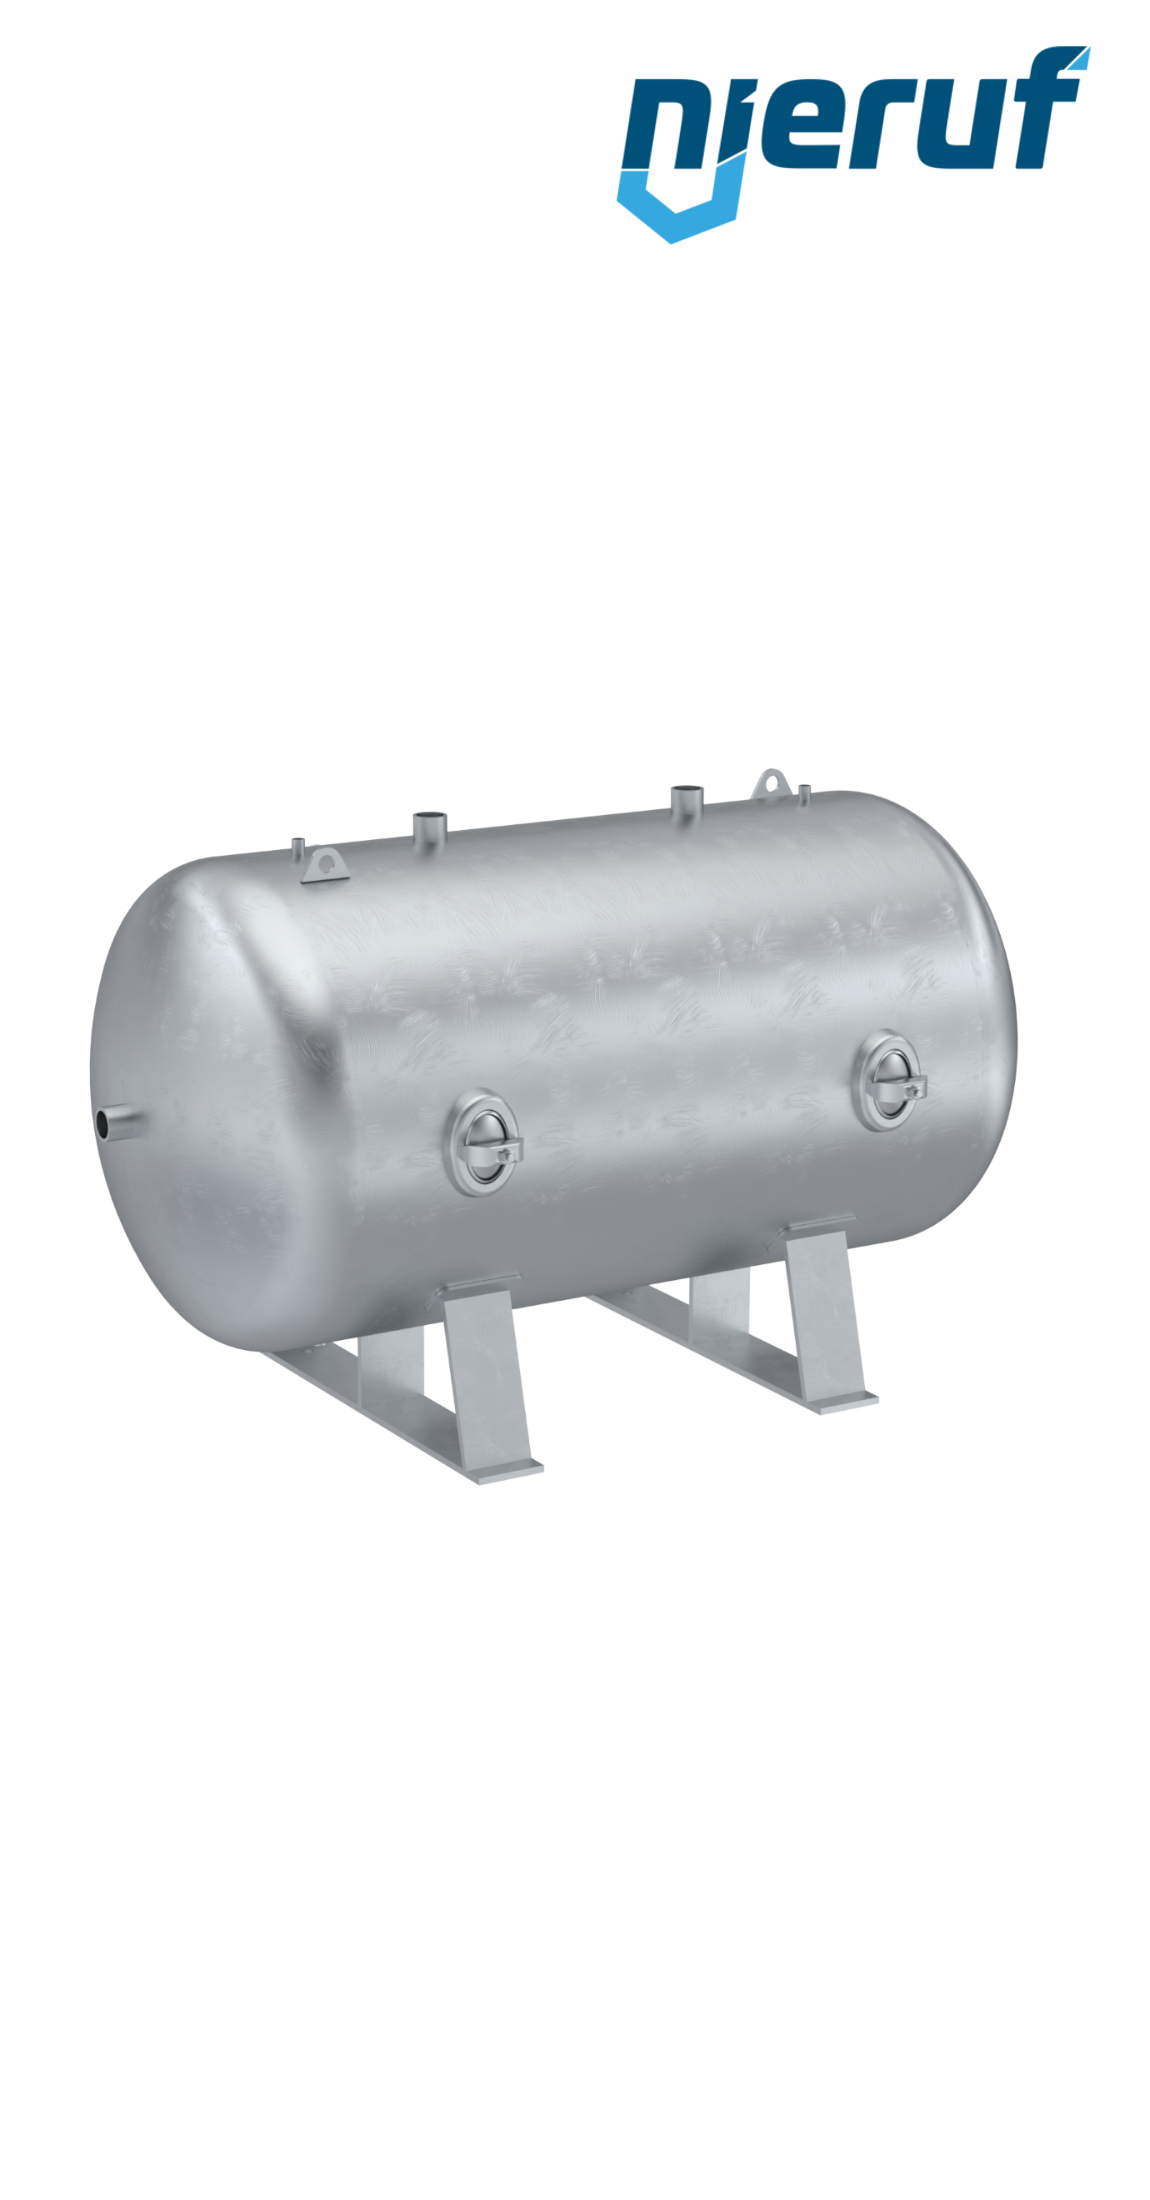 Serbatoi per alta pressione orizzontale BE02 3000 litri, 0-41 bar, acciaio zincato